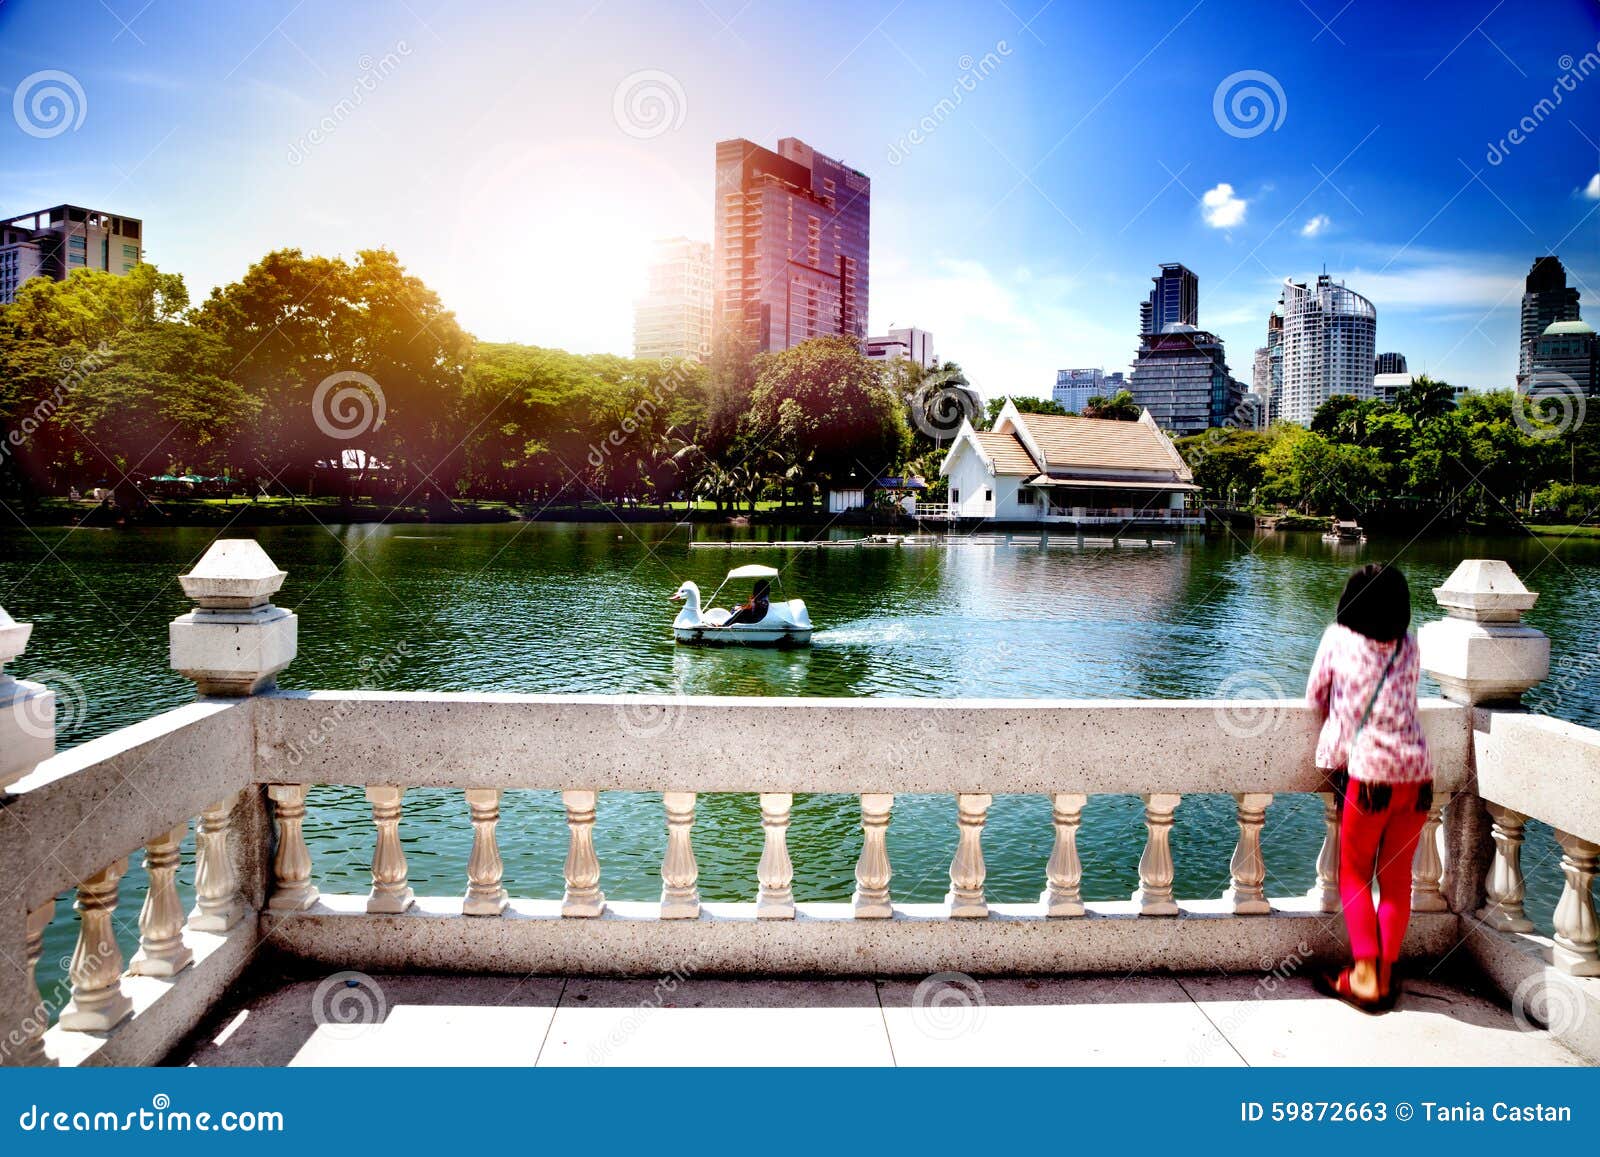 Lookout in Park in Bangkok, Thailand. People Enjoying Nature Stock Image - of gazebo, 59872663